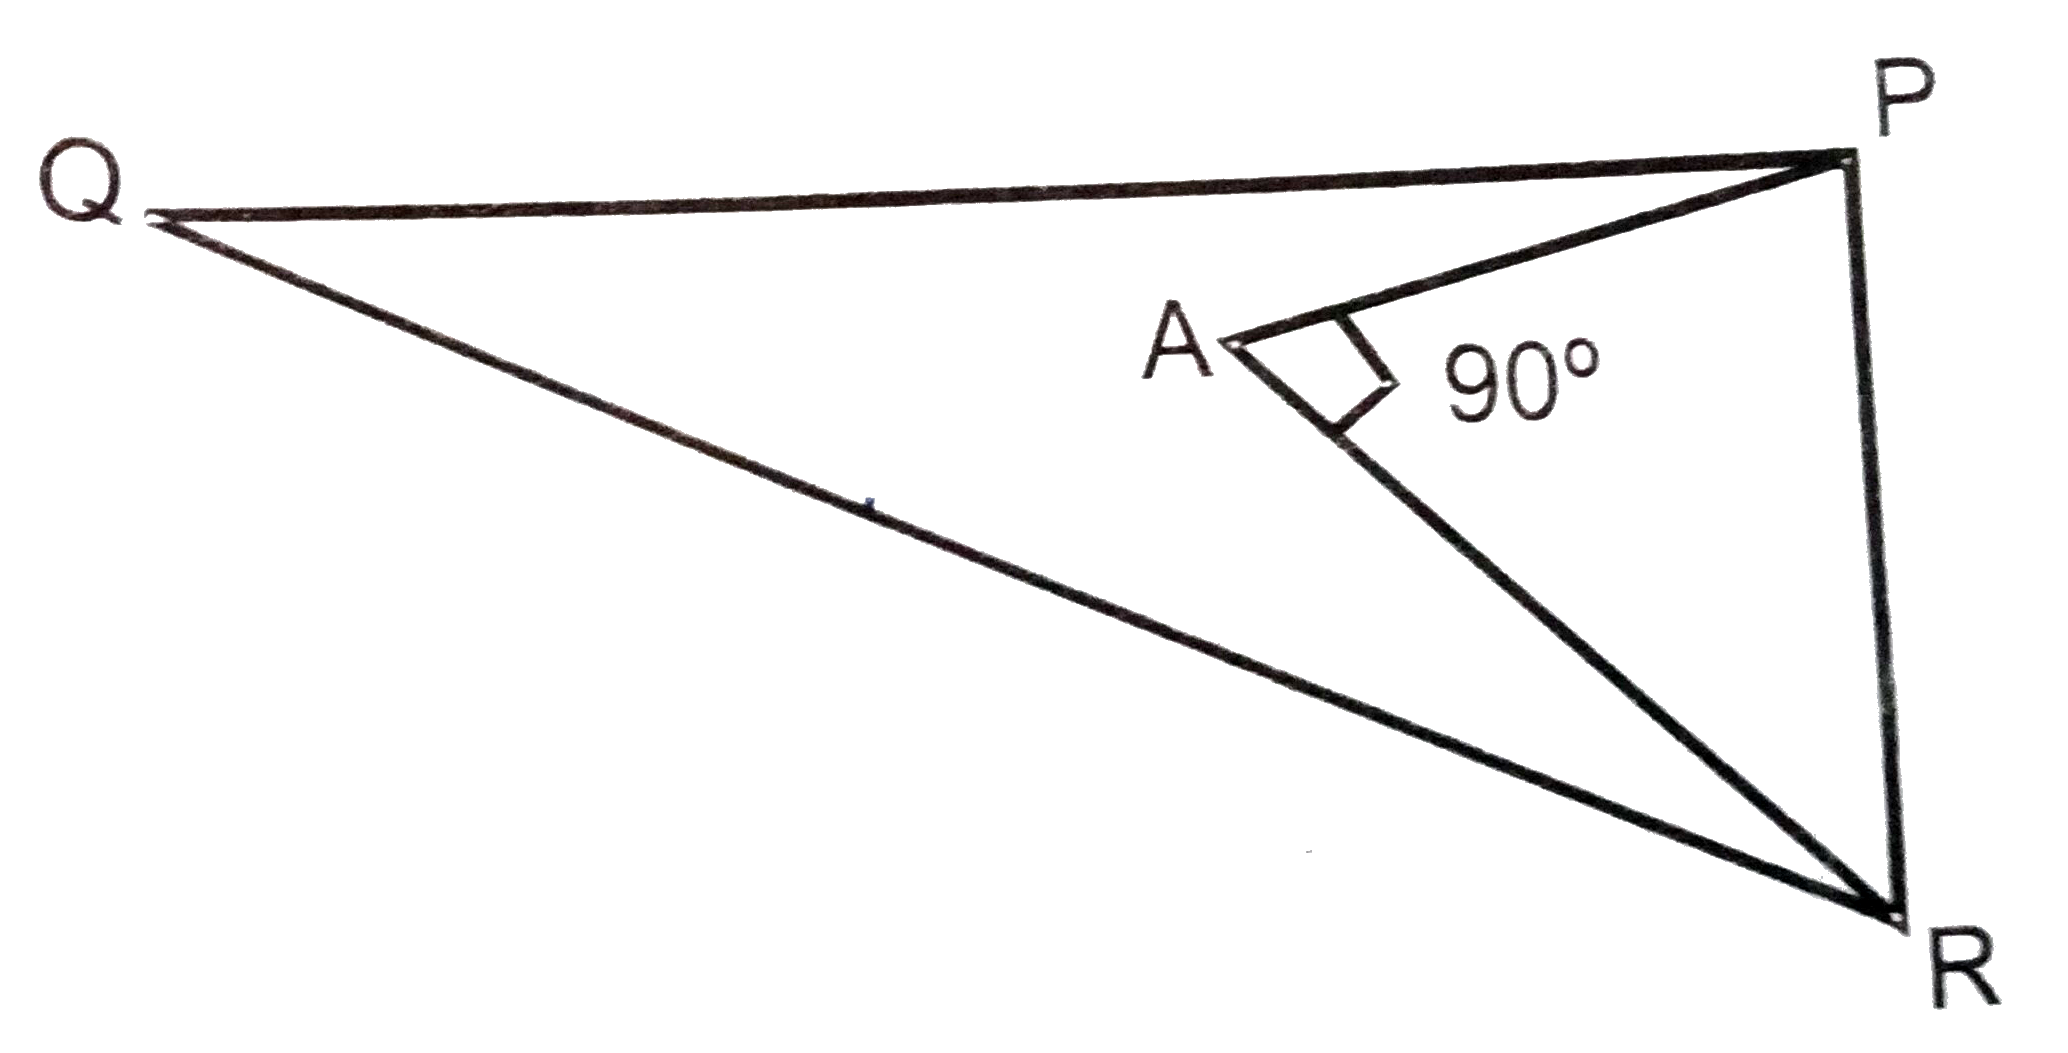 दिए गए चित्र में PQ=24cm,QT=26cm,anglePAR=90^@,PA=6cm और AR=8cm तो angleQPR  का मान ज्ञात करें ।